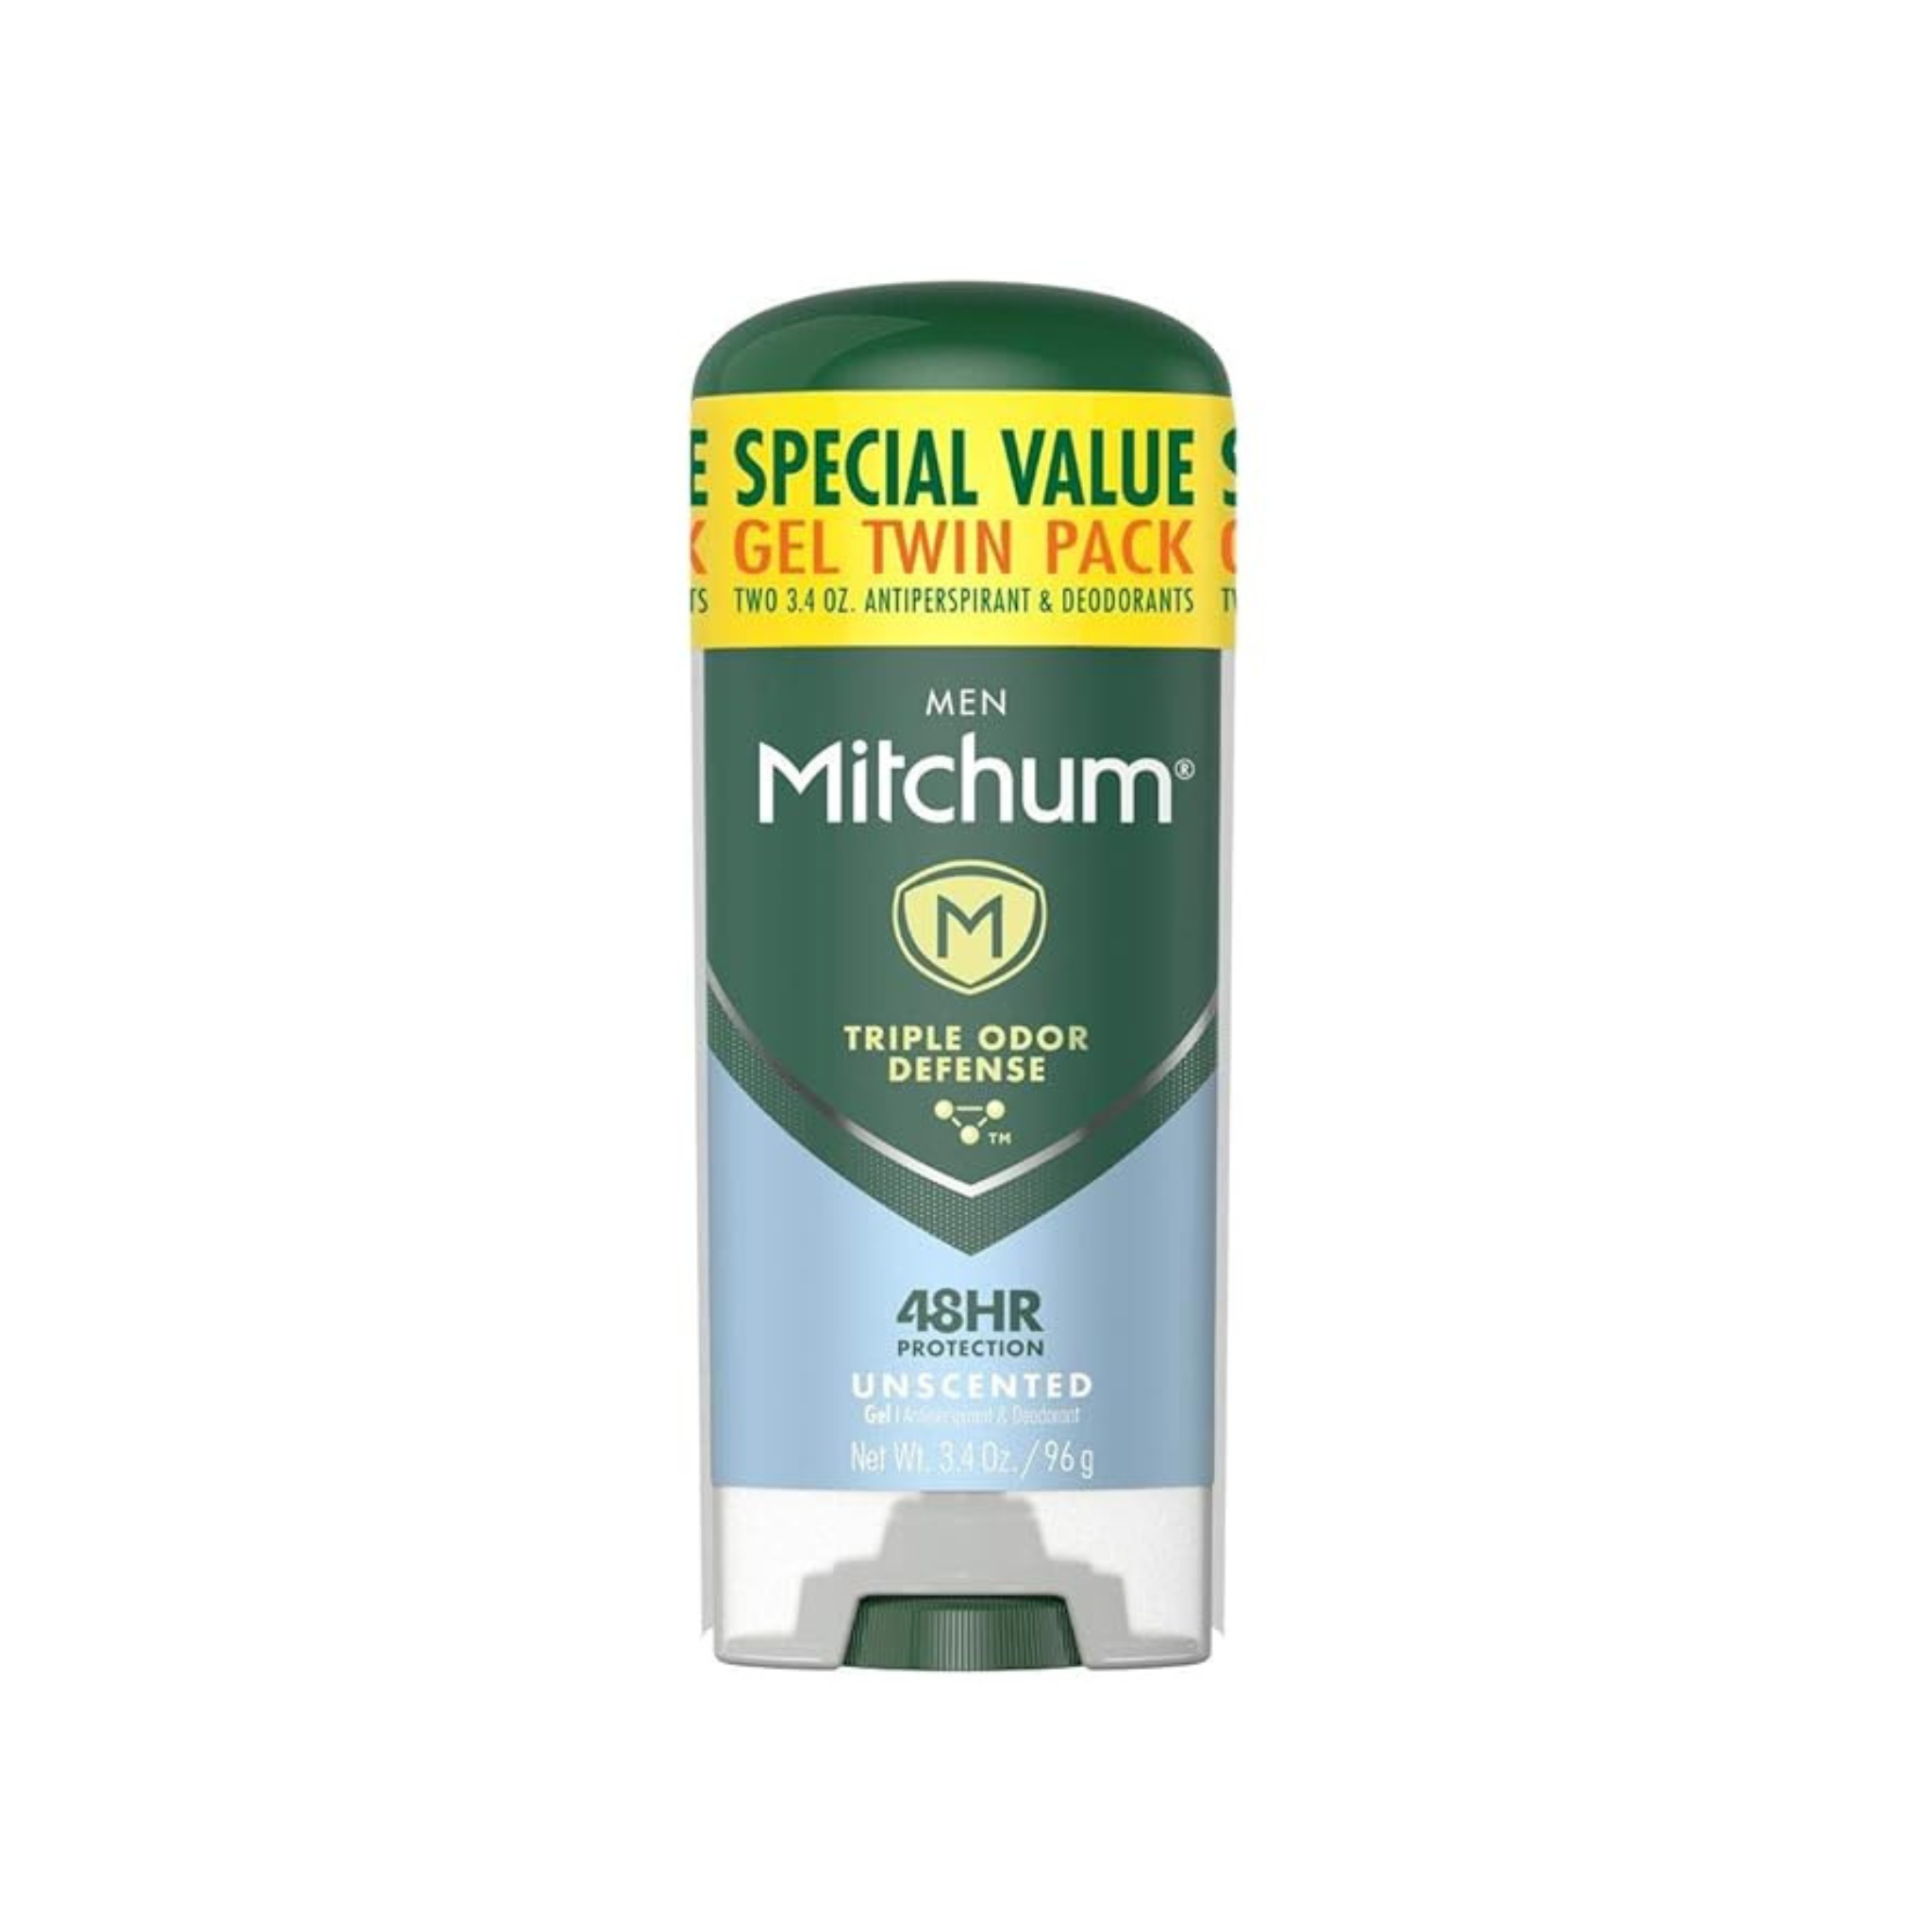 2 Pack Of Mitchum Men’s Antiperspirant Deodorant Sticks